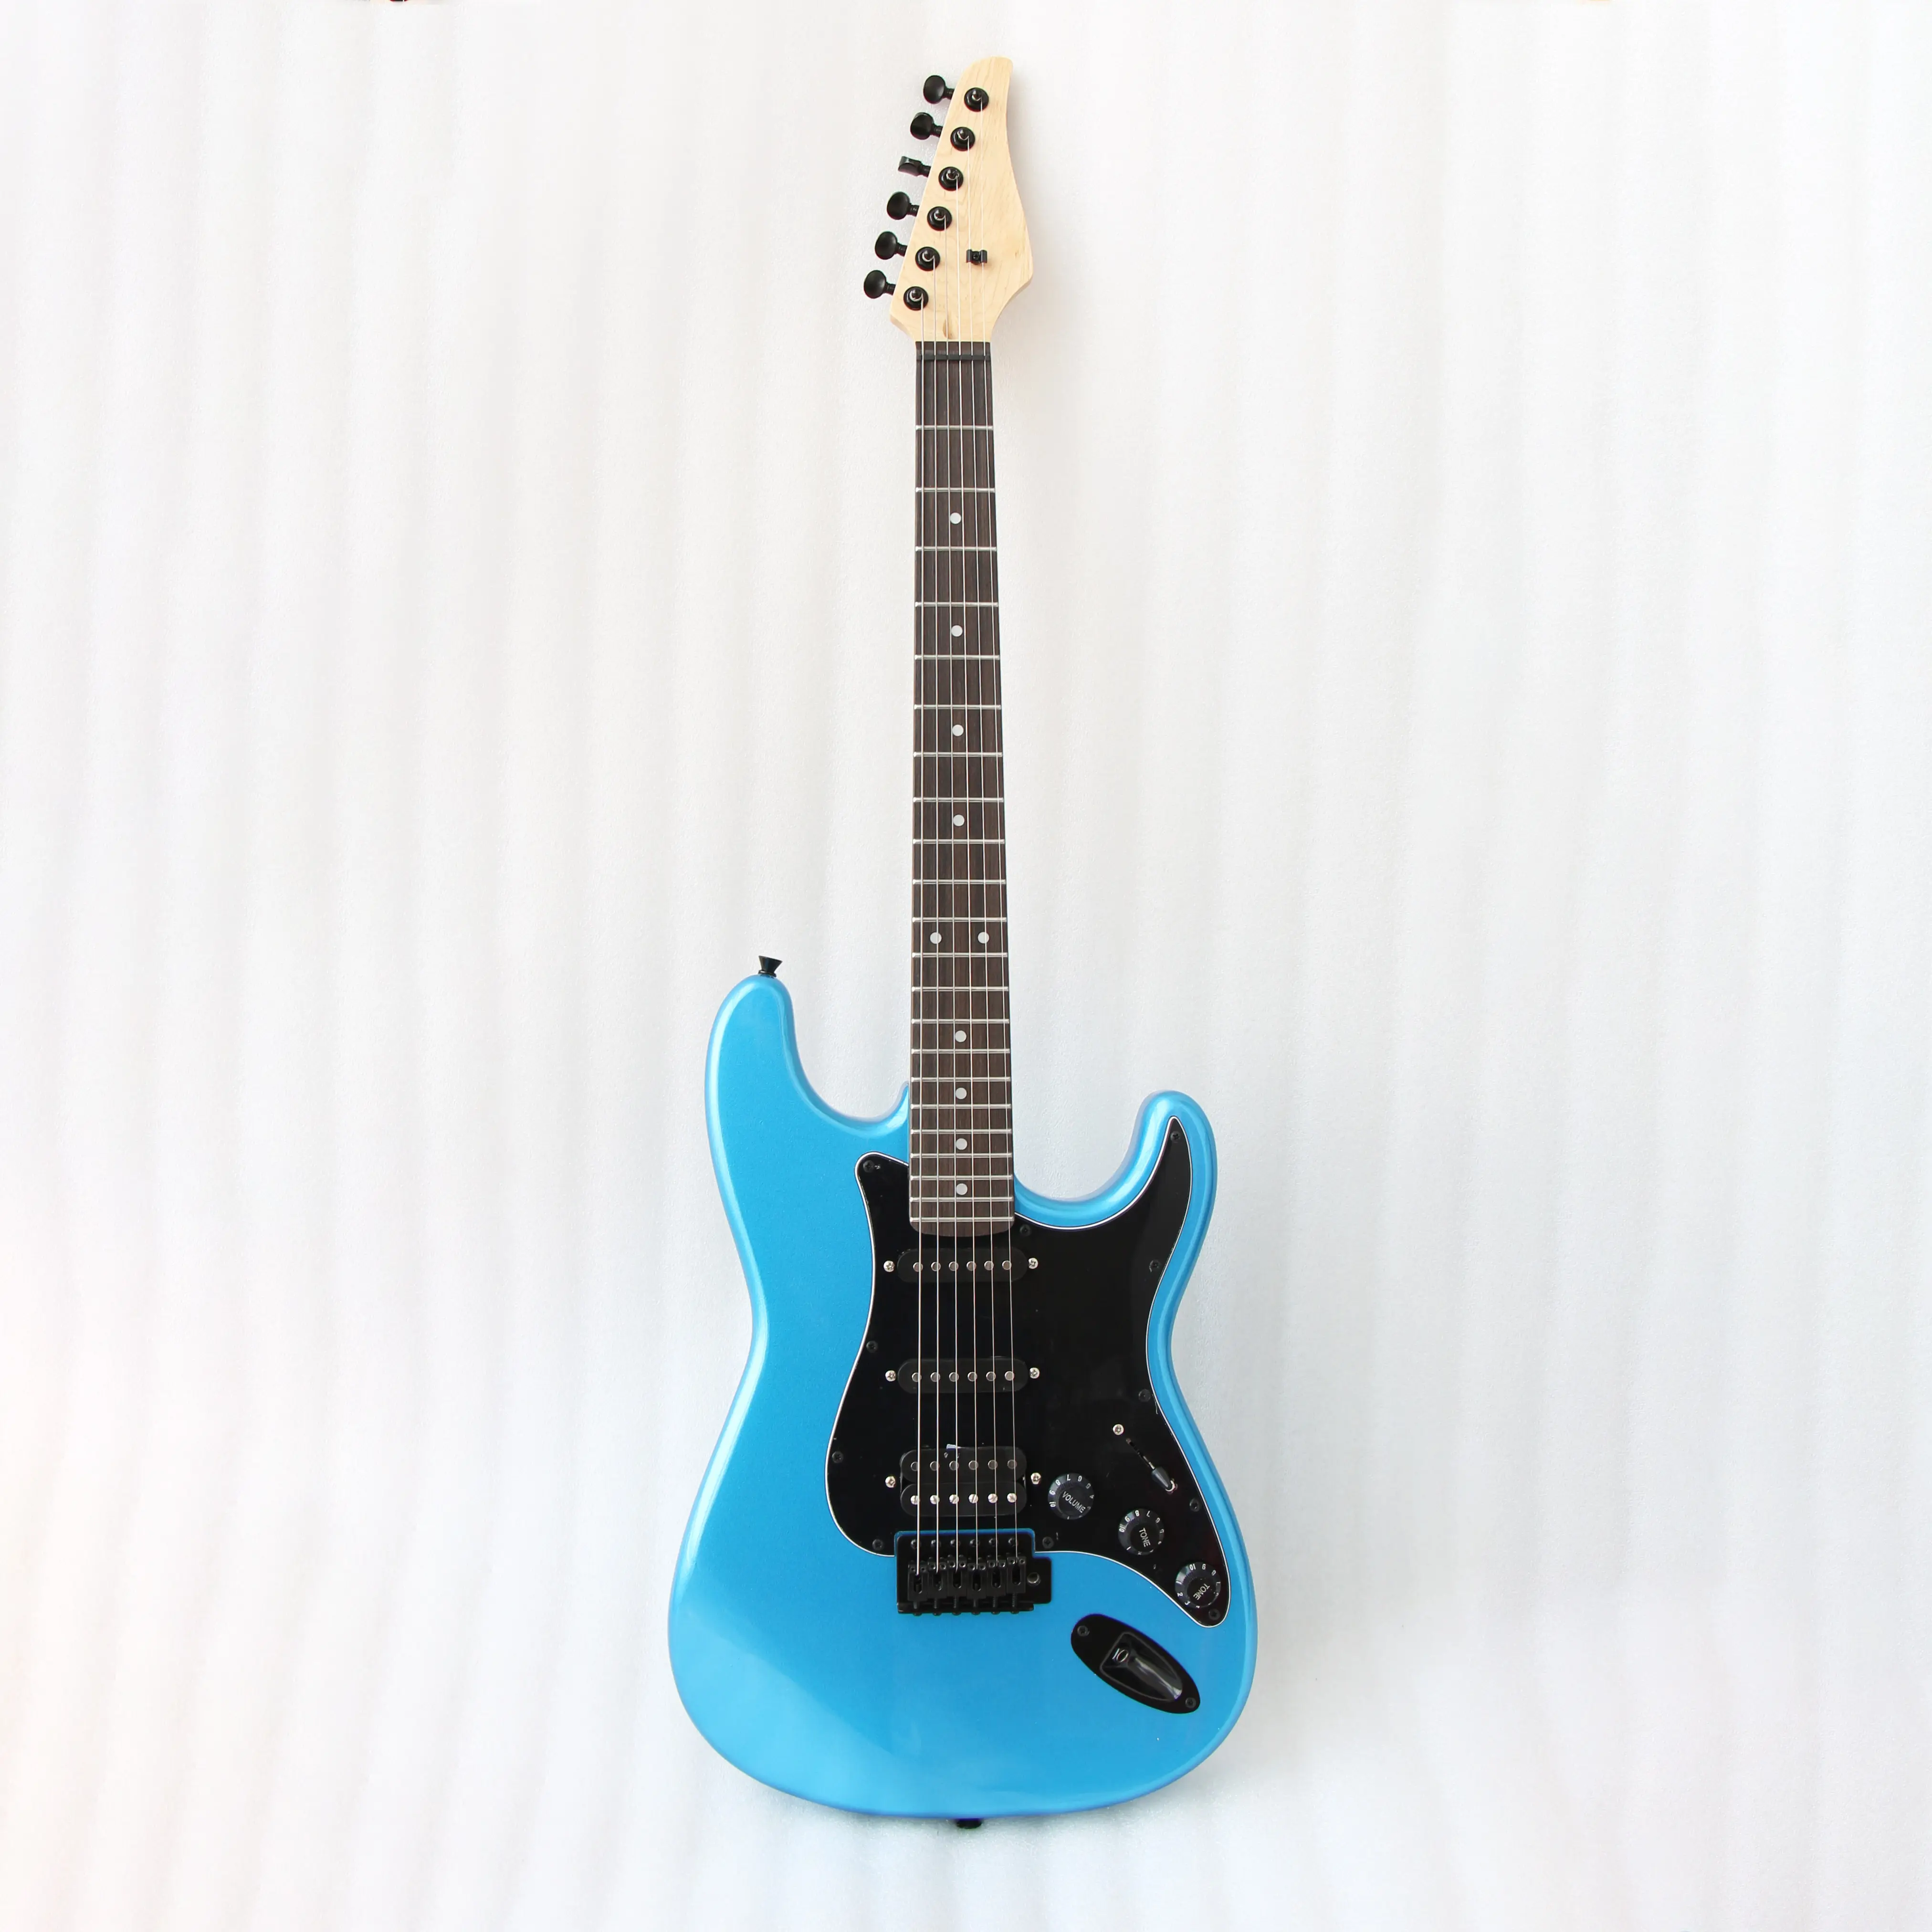 Gitar listrik murah kinerja biaya bagus gitar listrik terima gitar listrik custom